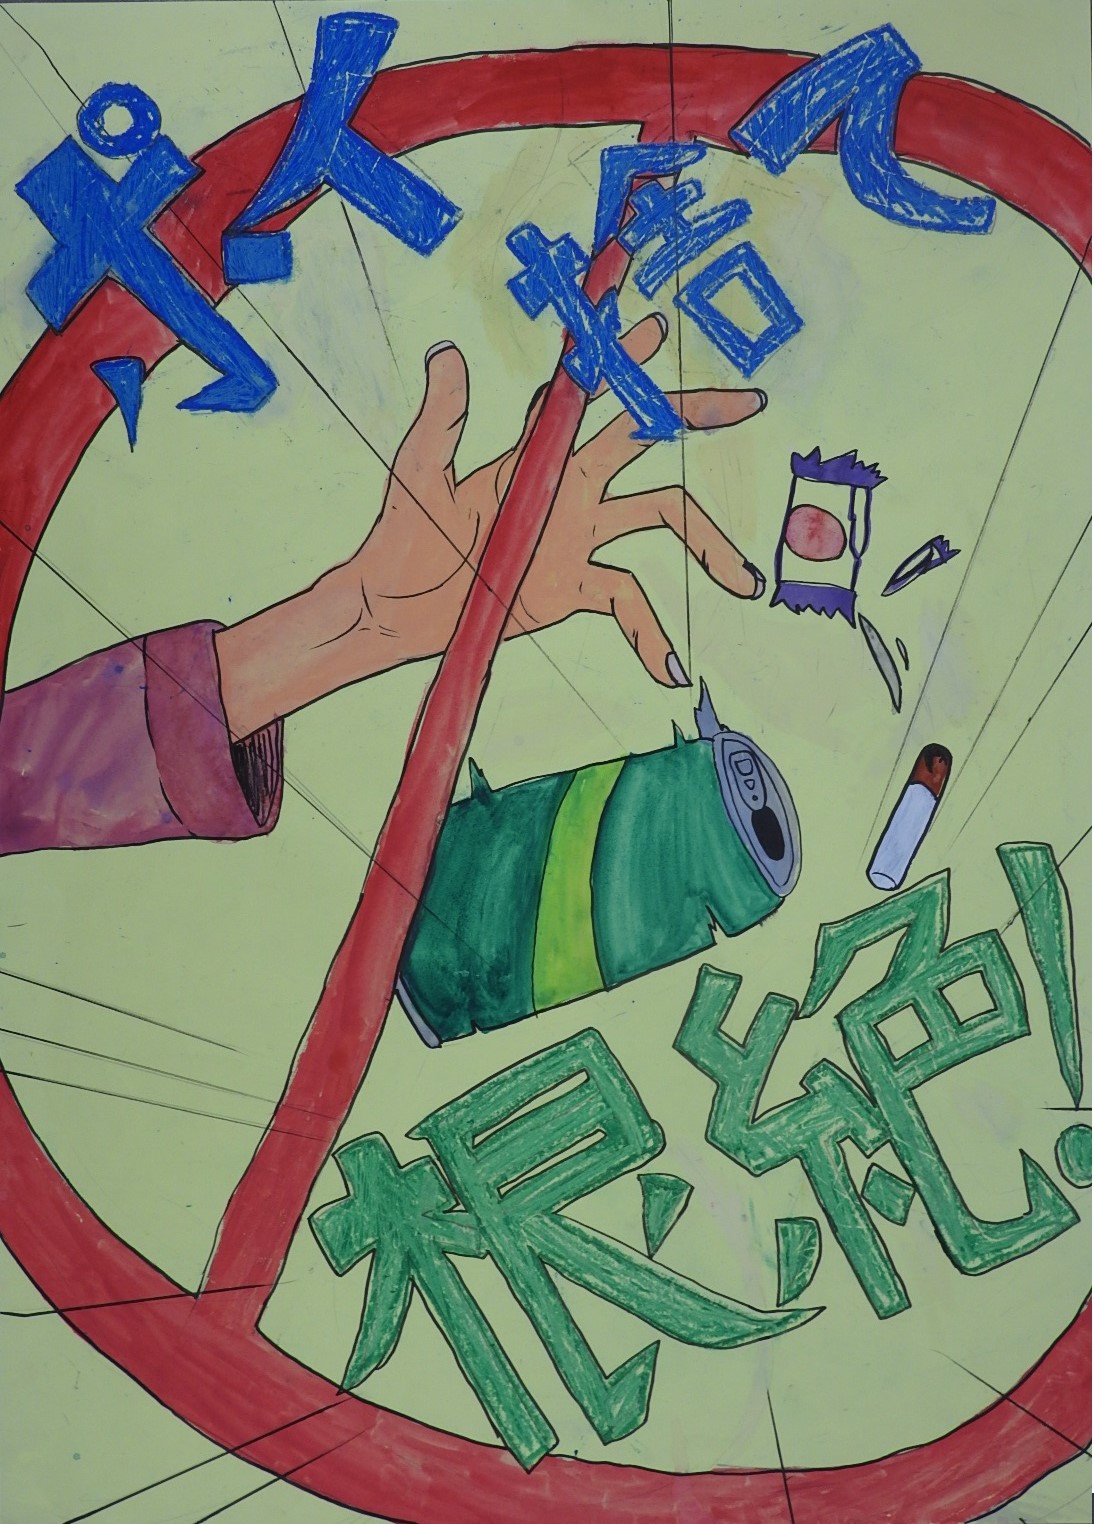 「ポイ捨て根絶！」と書かれ、缶やたばこなどのごみを捨てようとする手に禁止マークが描かれたポスター